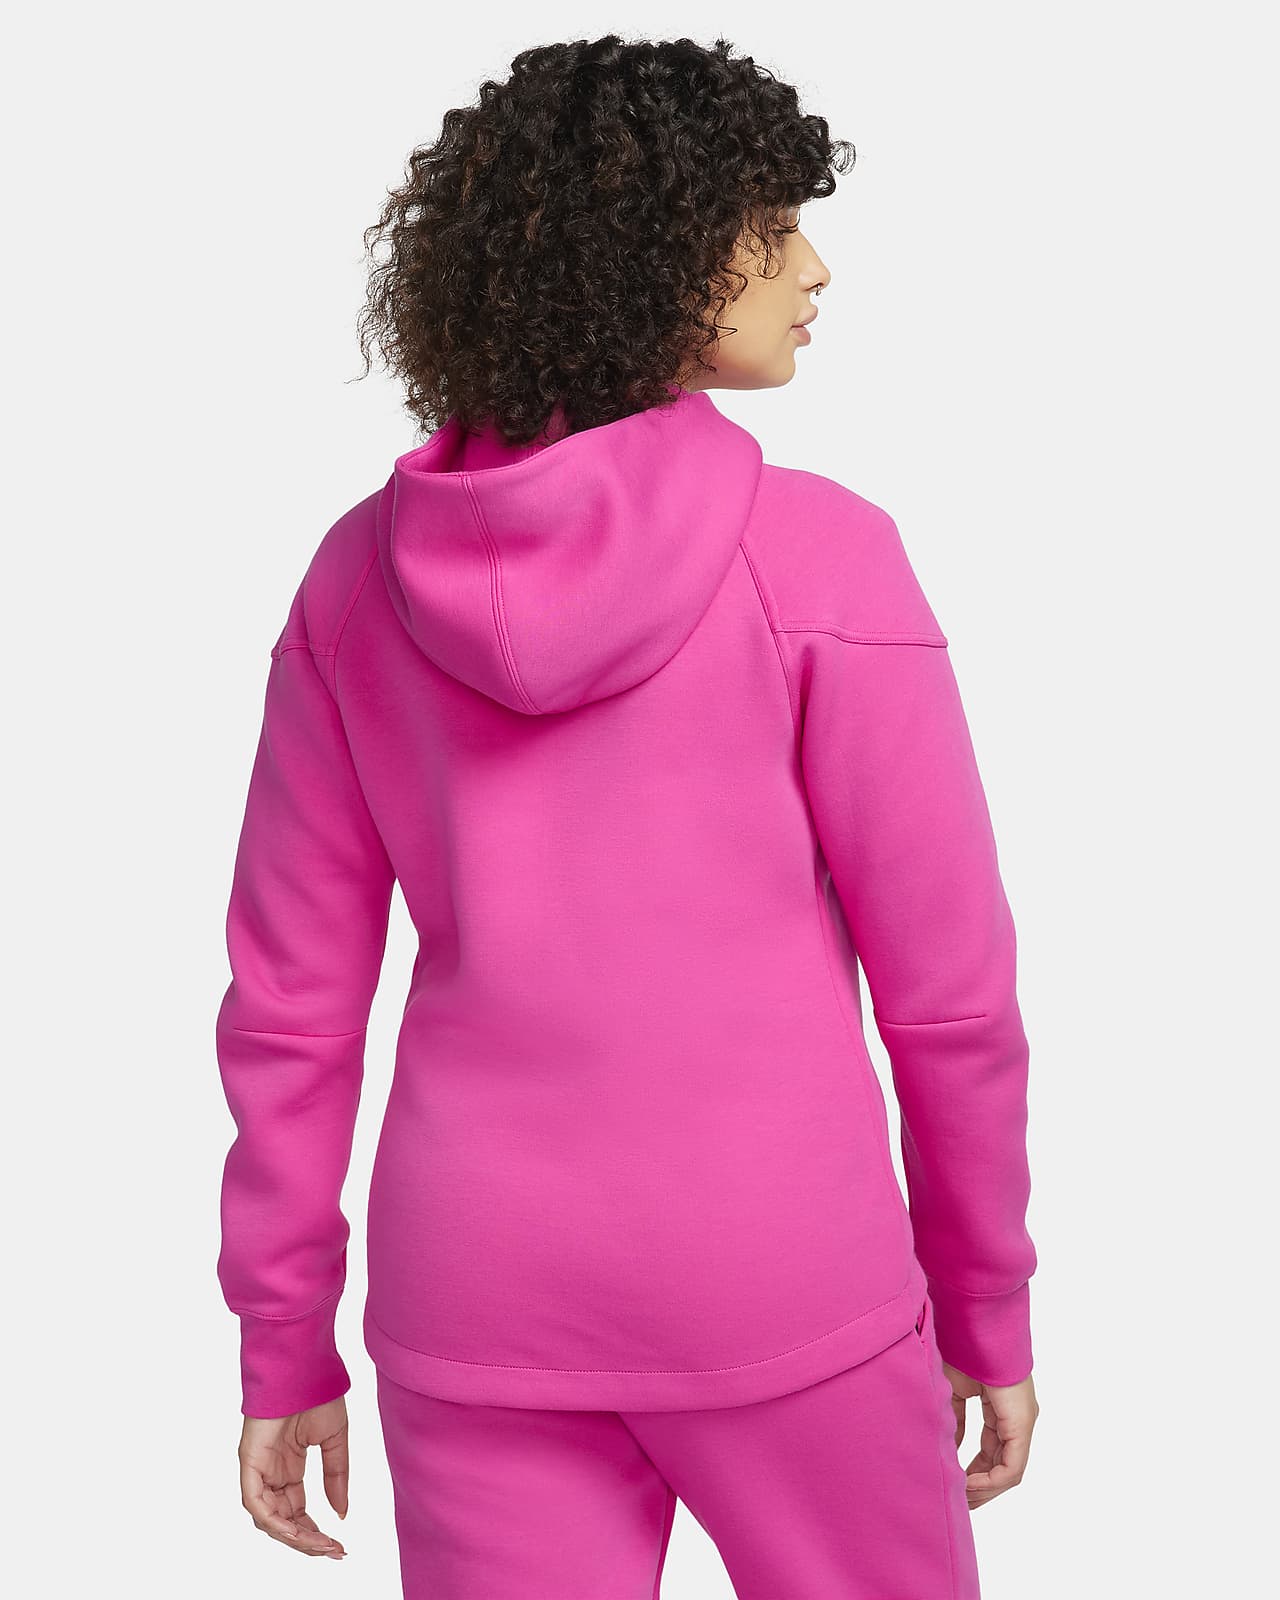 Nike Sportswear Tech Fleece Women's Pink Pants – Puffer Reds